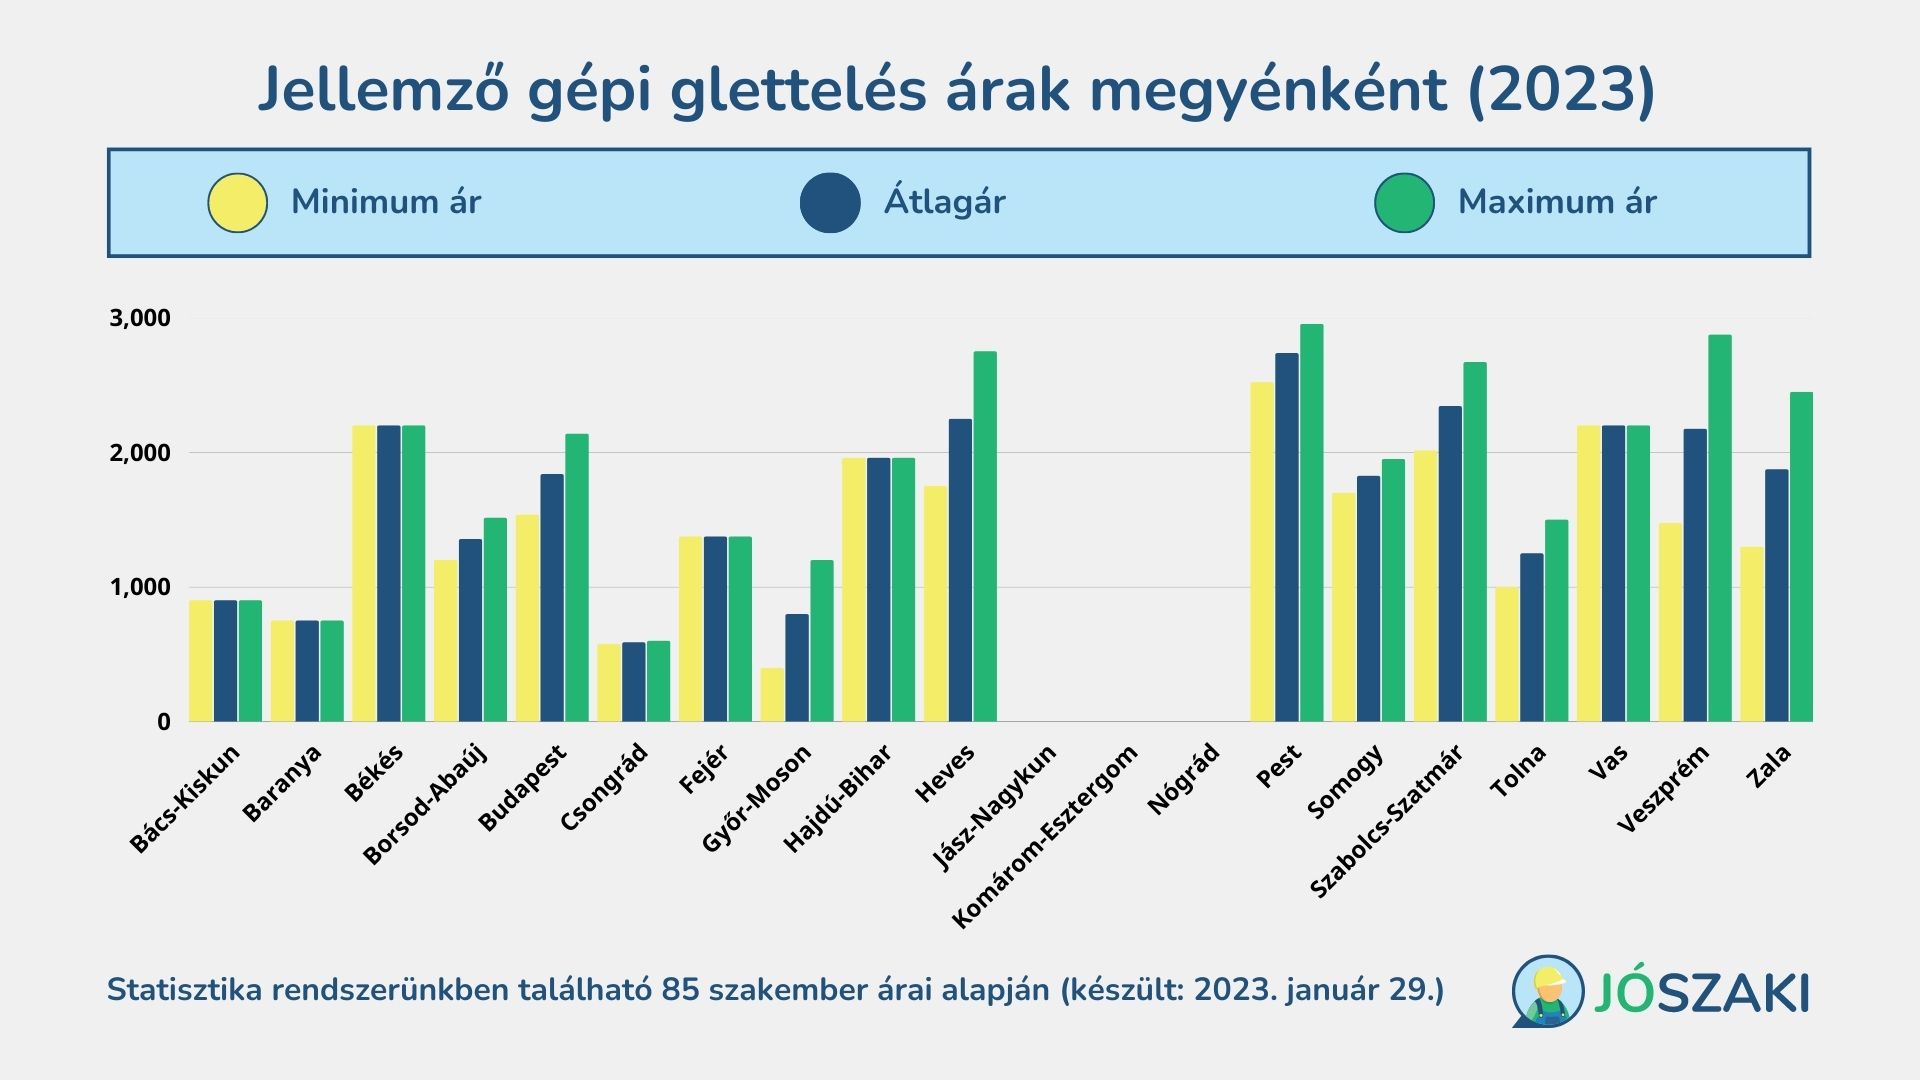 A gépi glettelés árának átlagai 2023 januárban Magyarországon megyénként